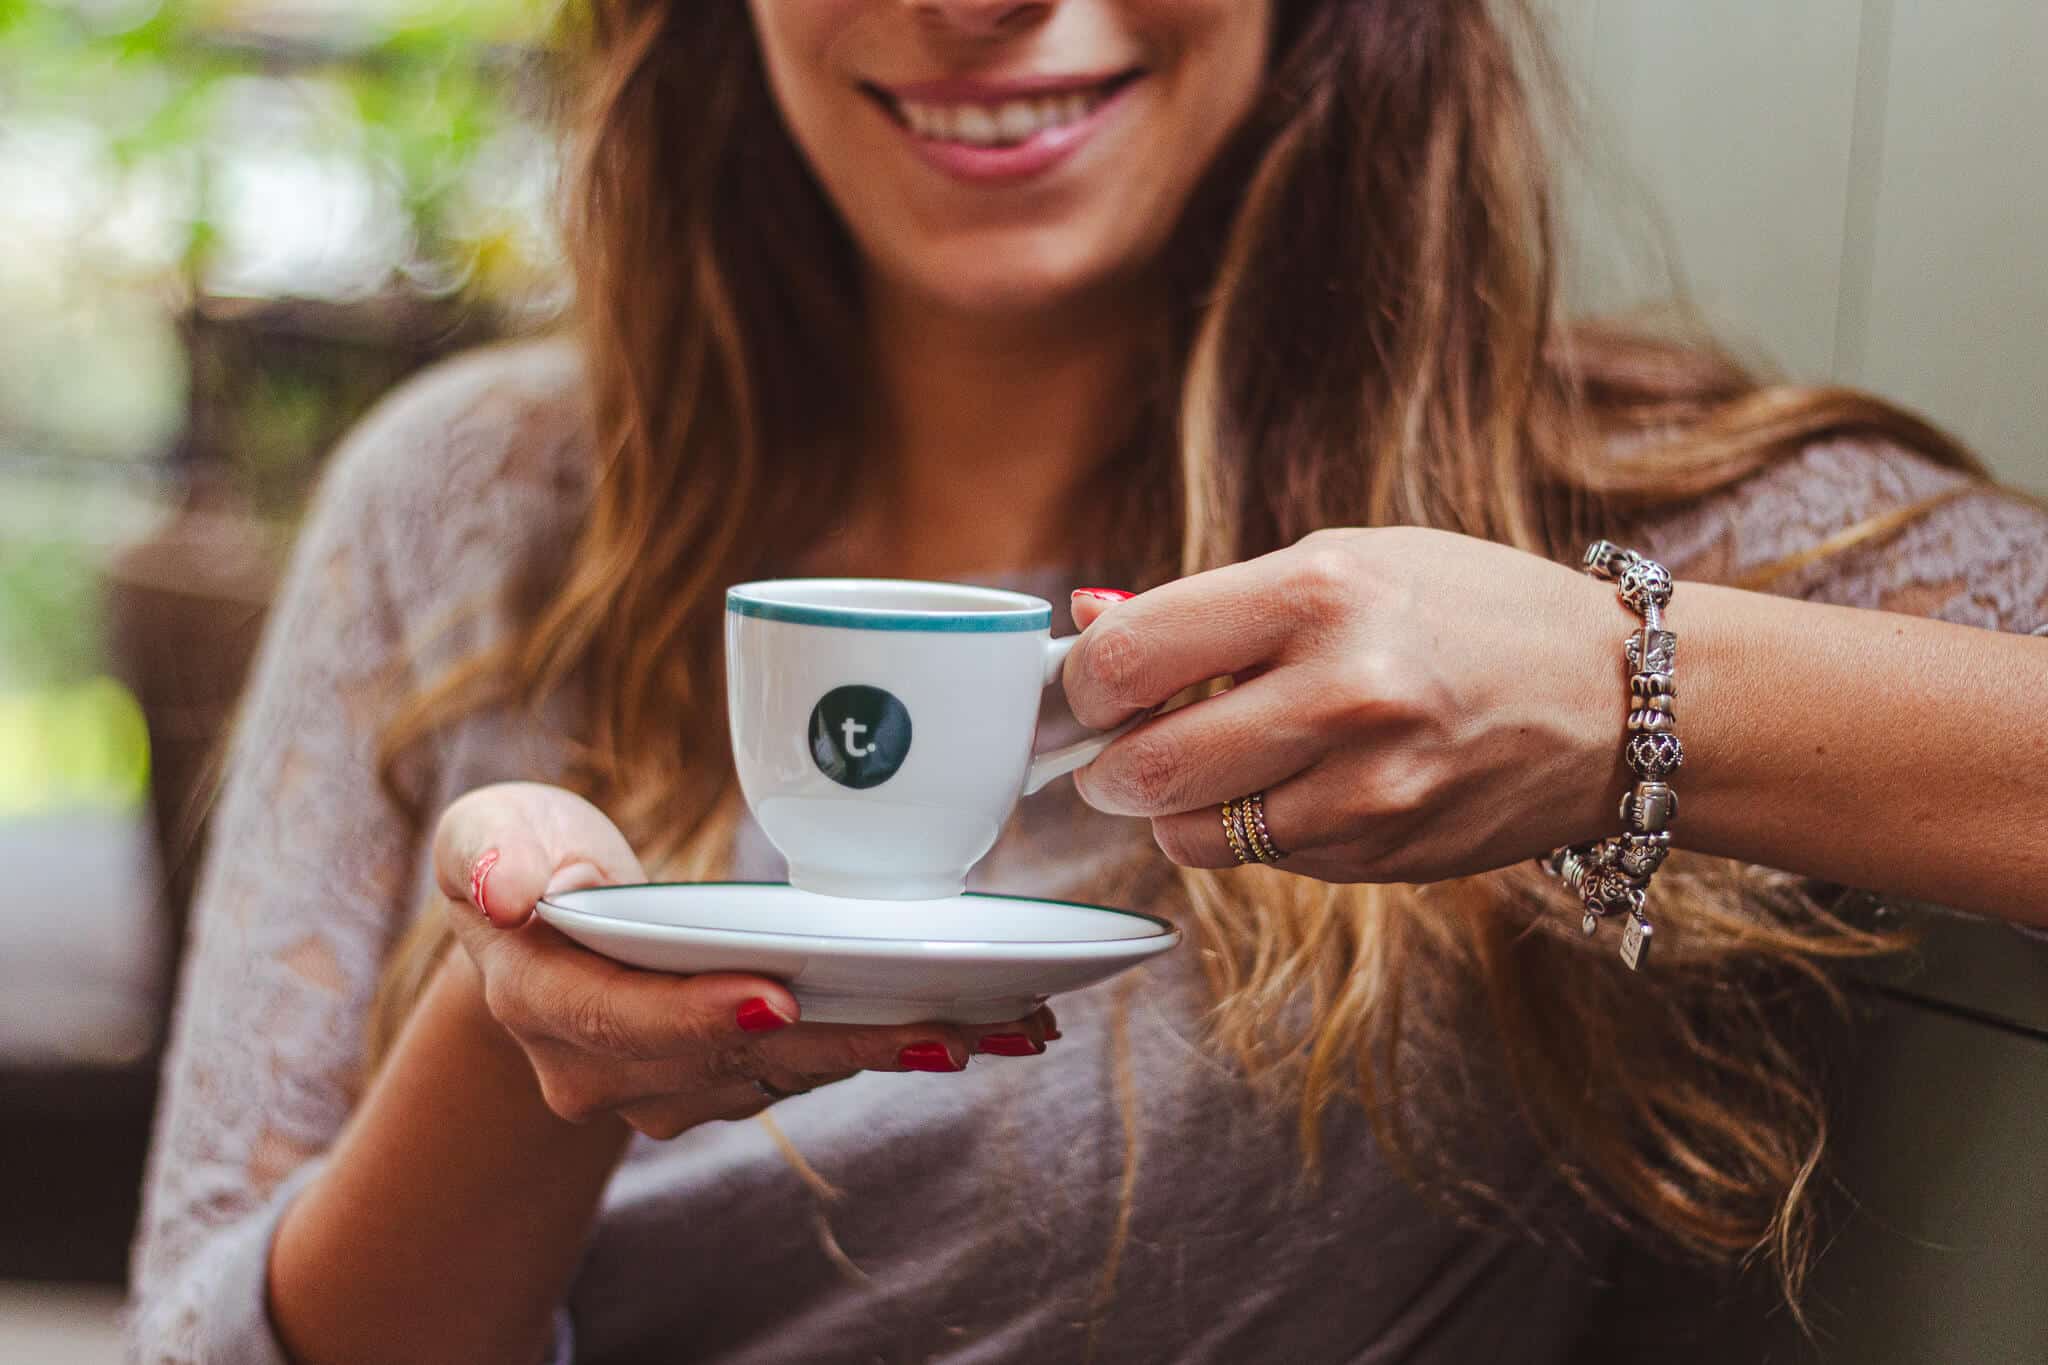 a foto mostra uma mulher branca, jovem, de cabelos longos, segurando uma xícara e pires com café expresso. a xícara contem o logo do tea connection e a mulher está sorrindo.